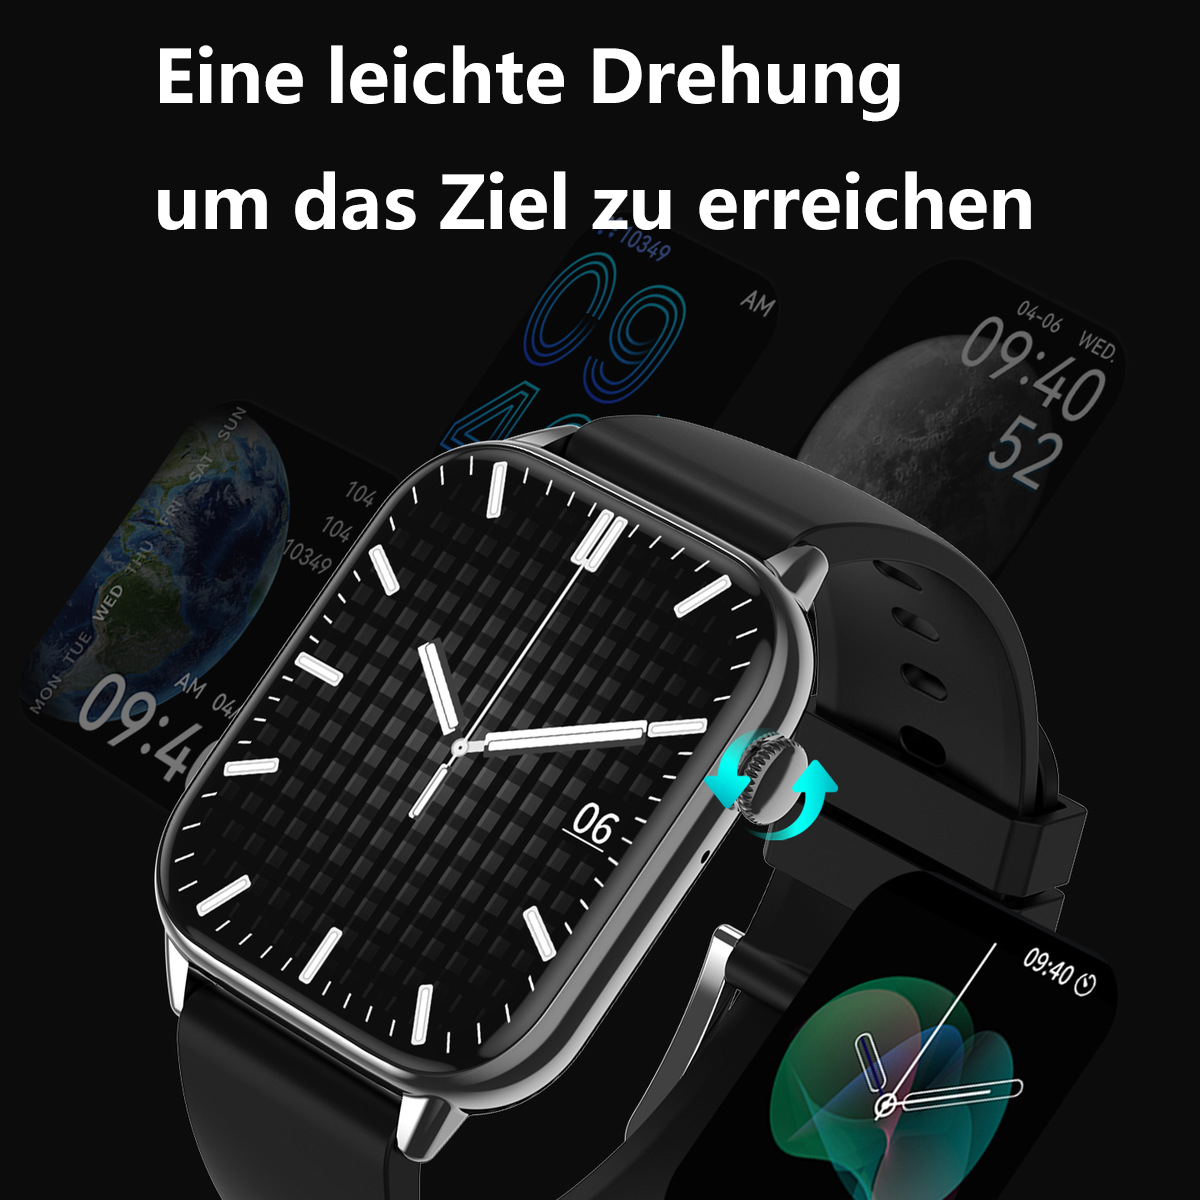 ENBAOXIN NFC-Rechner Smartwatch - Bluetooth-Anrufe, Gesundheitsüberwachung Gold Gold Smartwatch Stahlgürtel